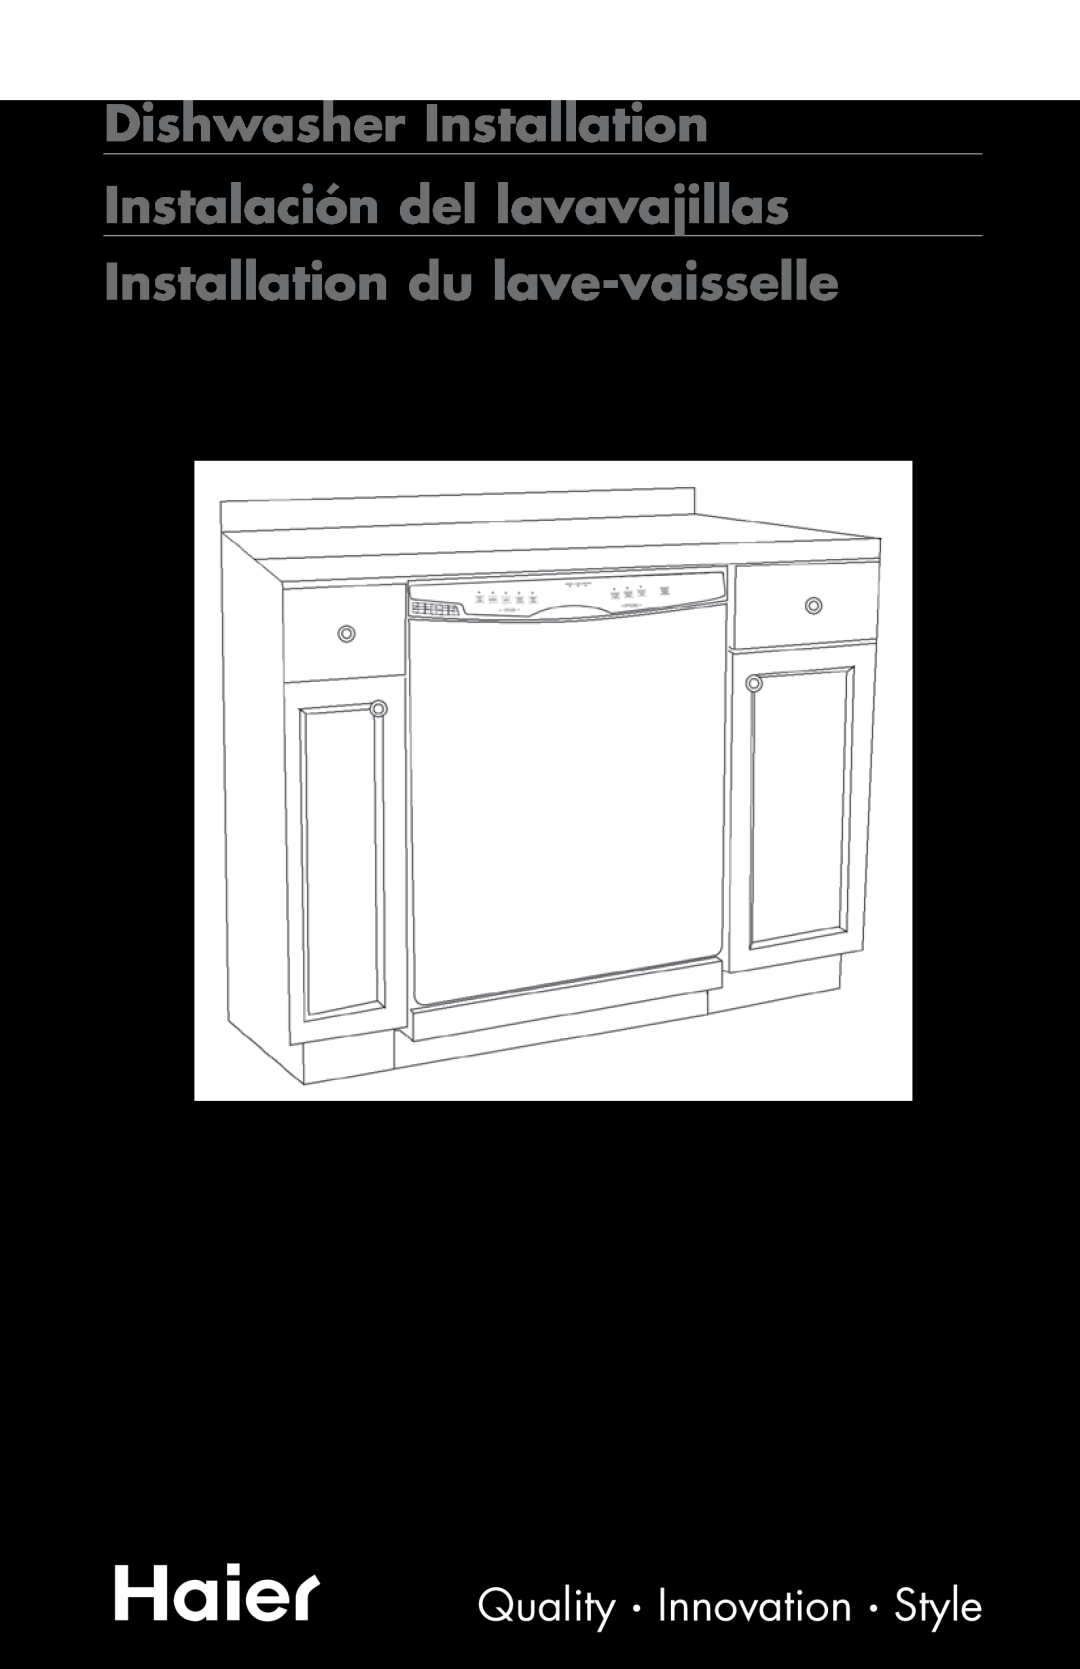 Haier DW-7777-01 manual Dishwasher Installation Instalación del lavavajillas, Installation du lave-vaisselle 